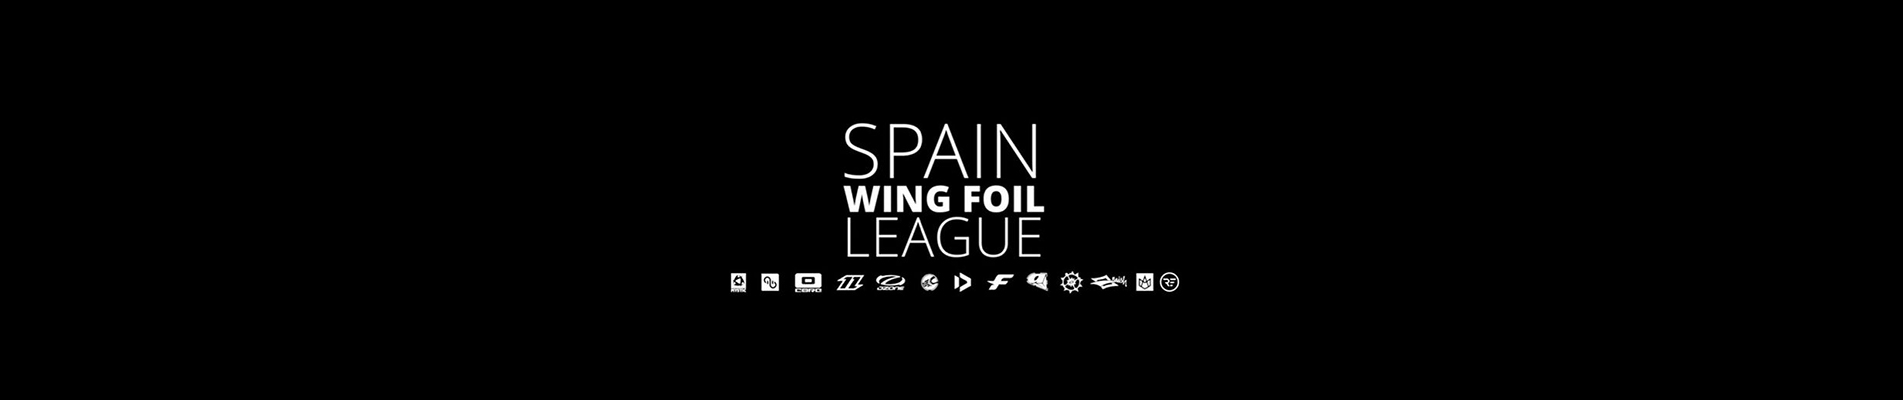 Image for Spain WingFoil League (SWL)